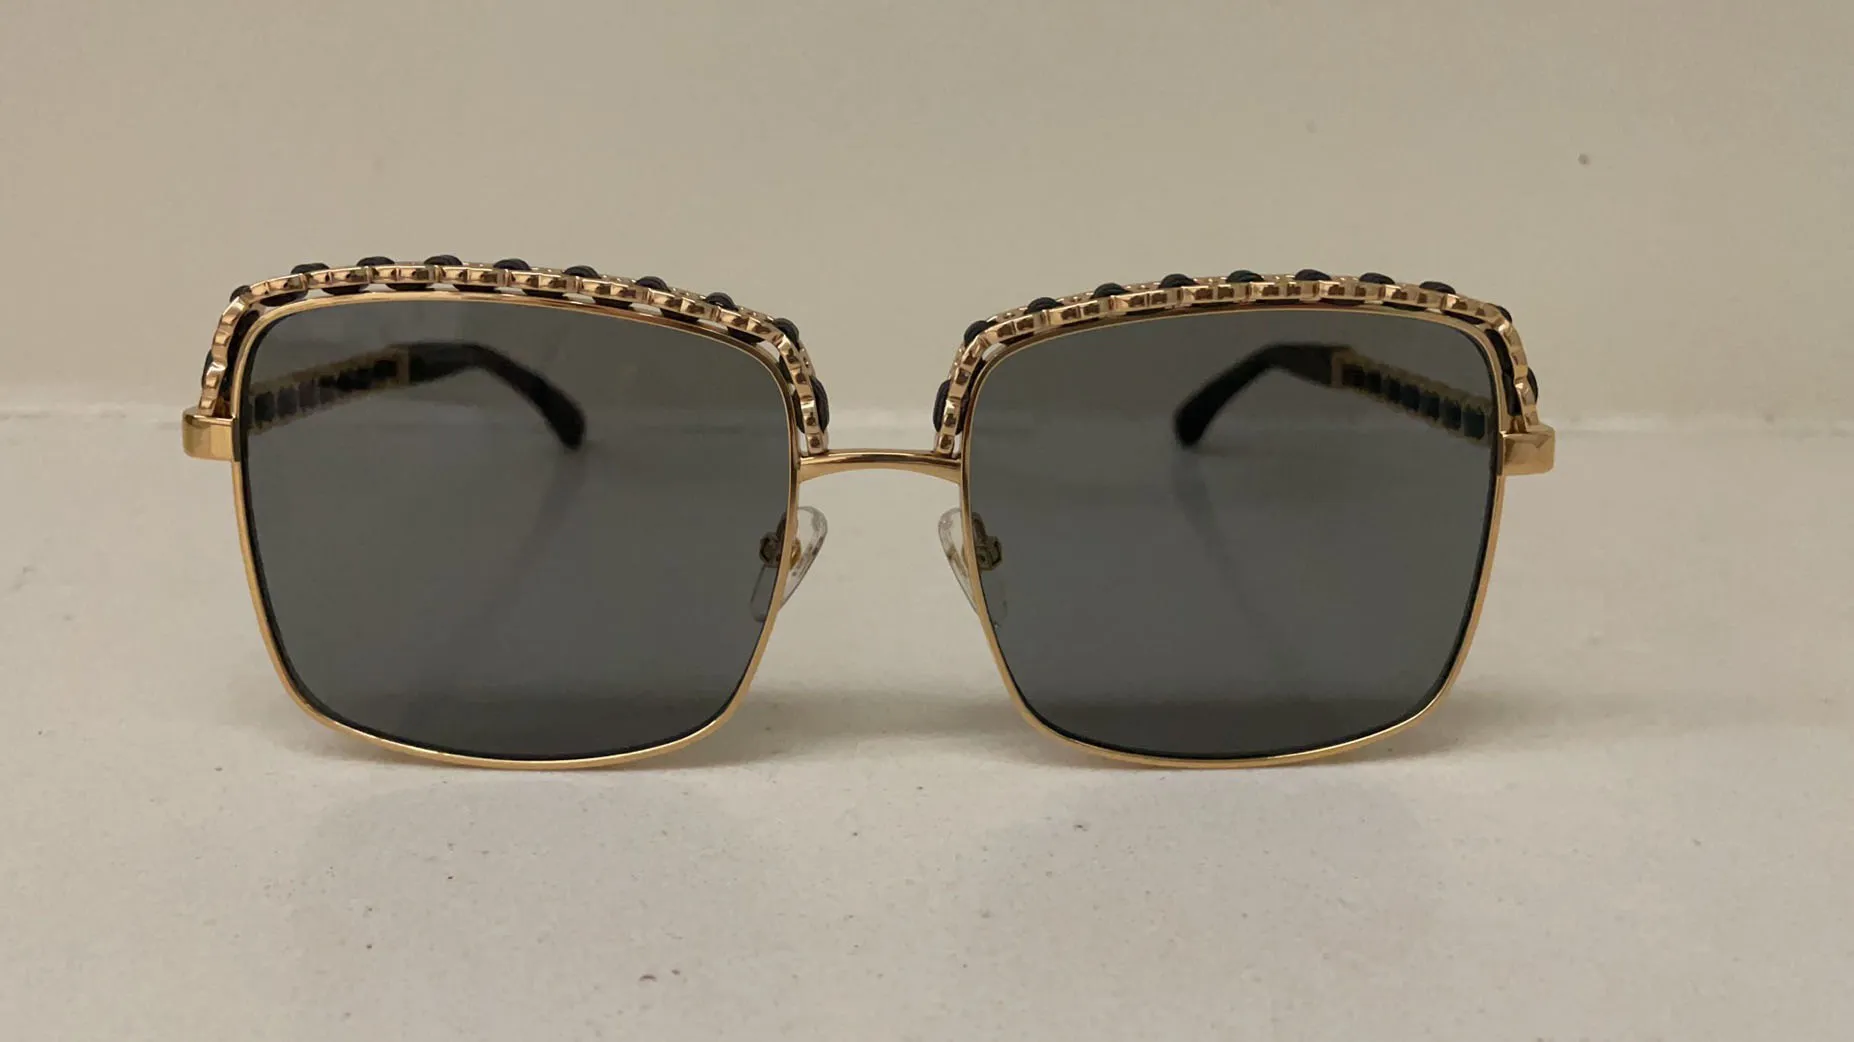 Top qualité 9550 lunettes de soleil pour femmes hommes lunettes de soleil style de mode protège les yeux UV400 lentille avec case257b